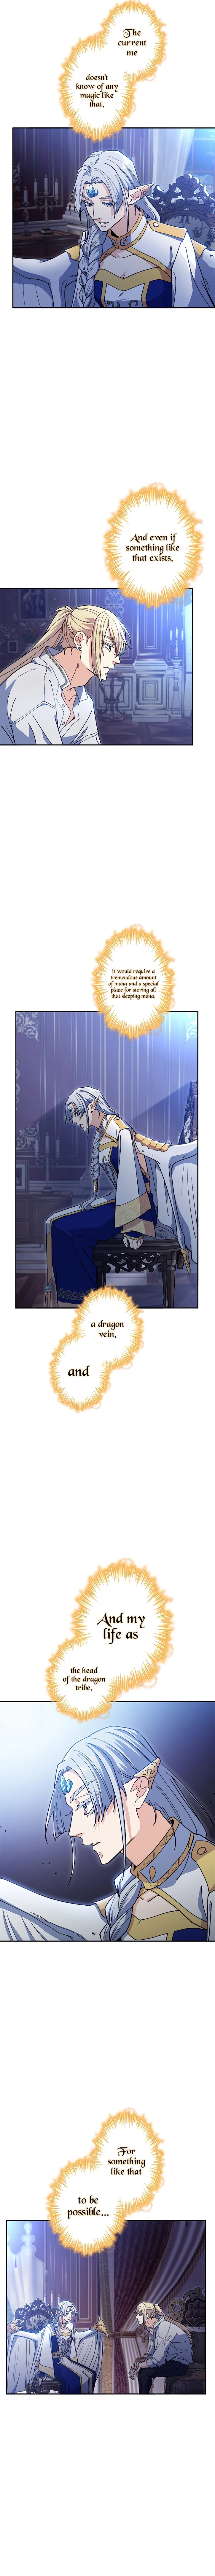 White Dragon Duke: Pendragon - Chapter 82 Page 9